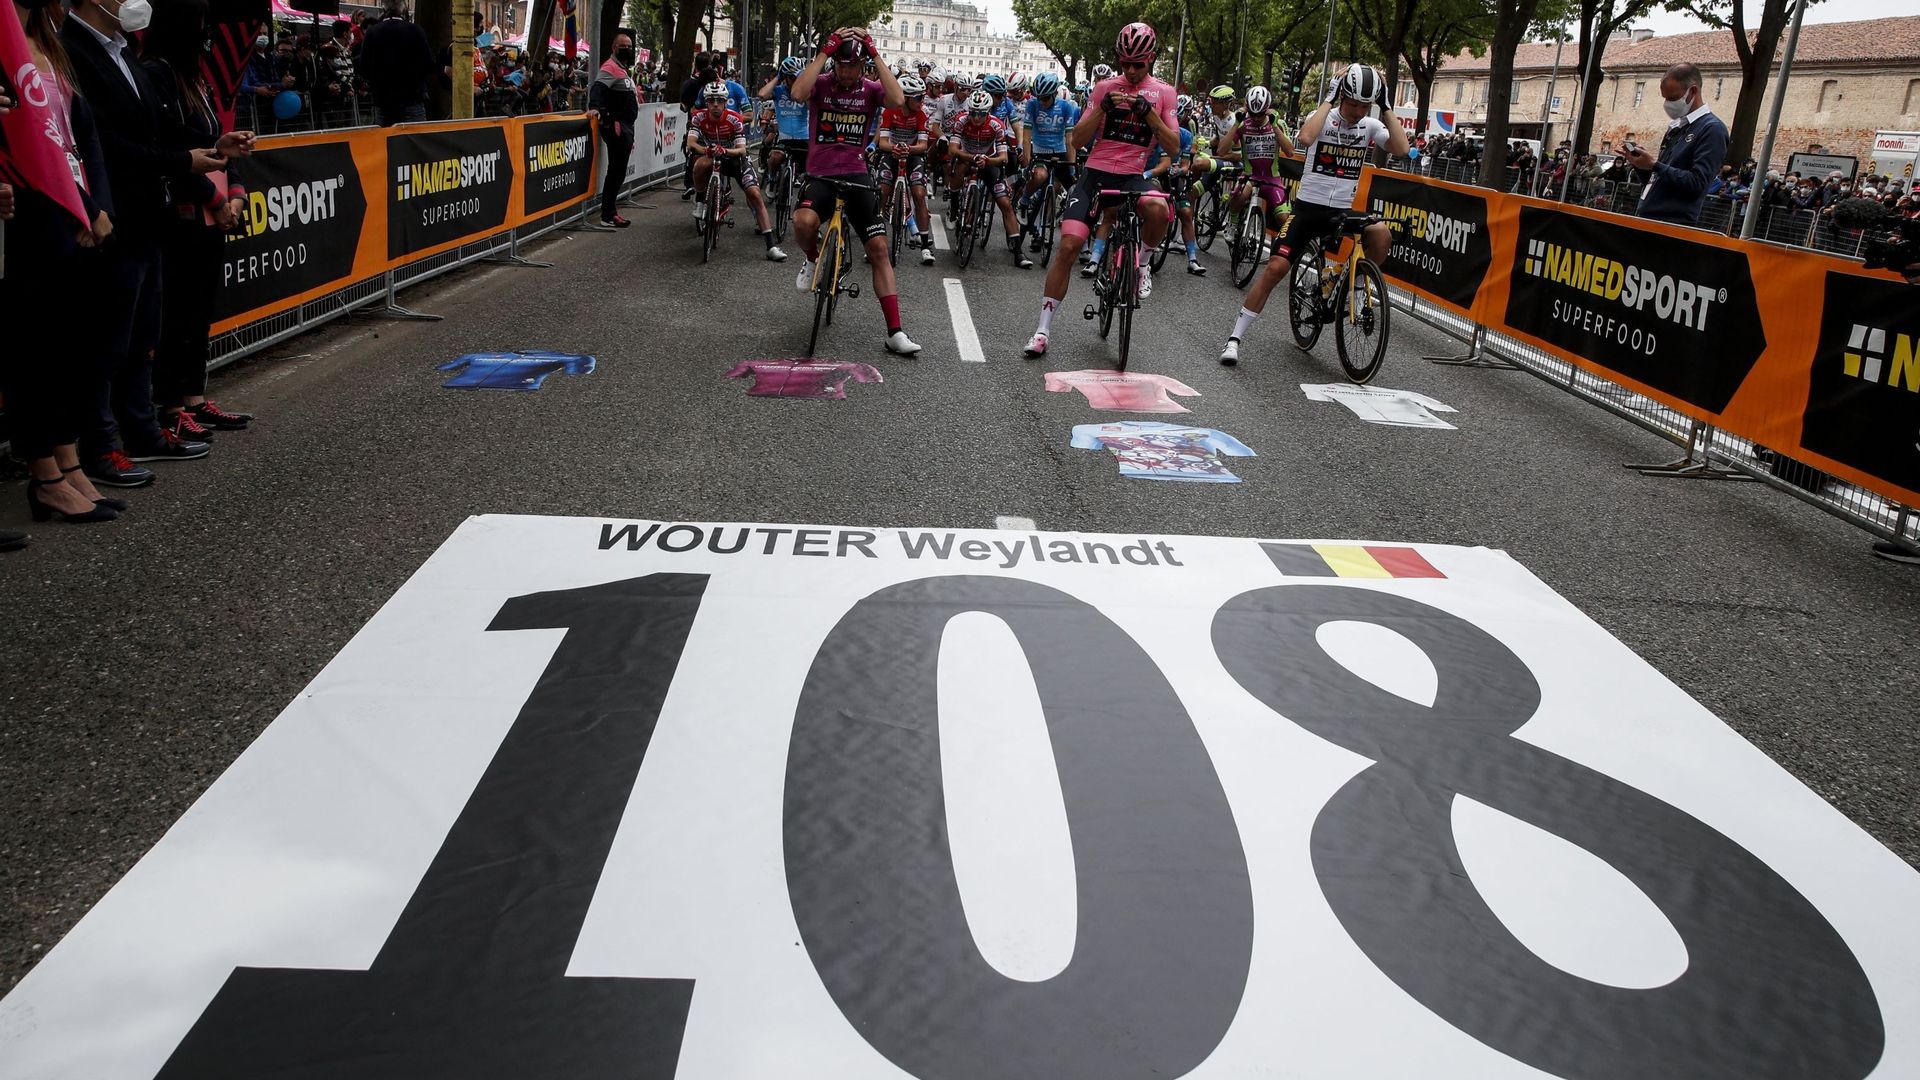 Cyclisme : L’hommage rendu à Wouter Weylandt sur le Giro 2021, 10 ans après sa disparition tragique.